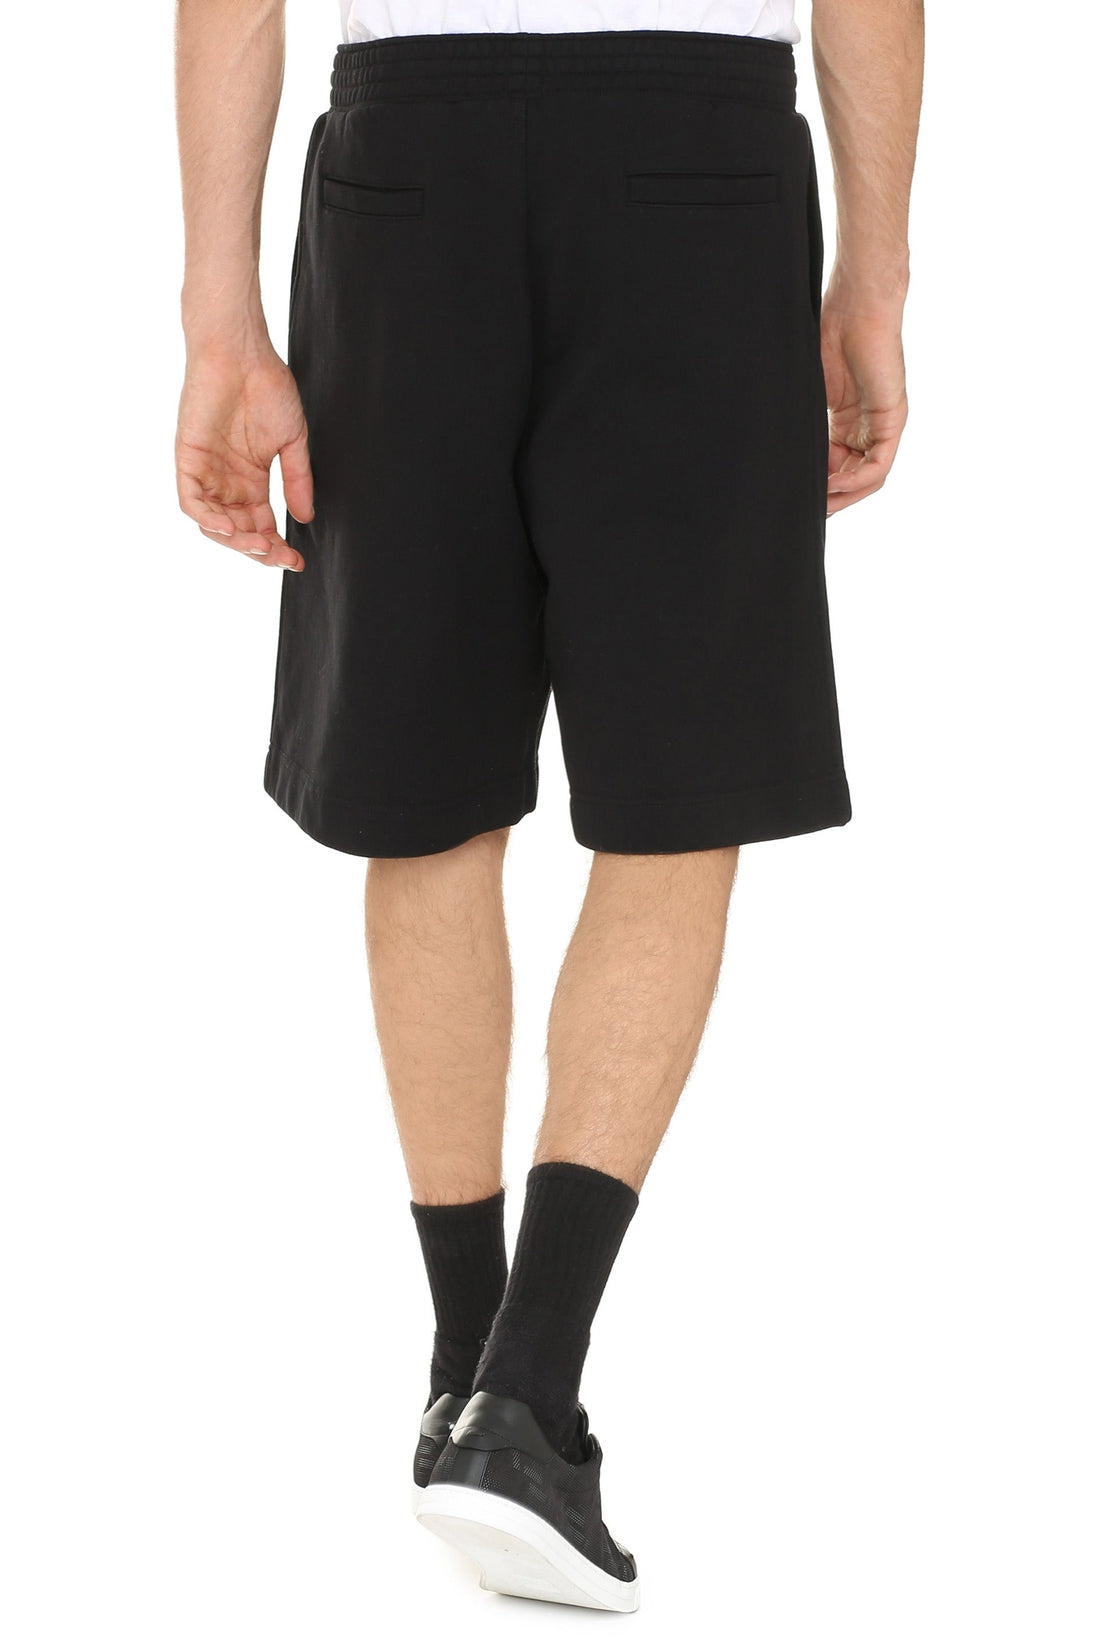 Givenchy-OUTLET-SALE-Cotton bermuda shorts-ARCHIVIST